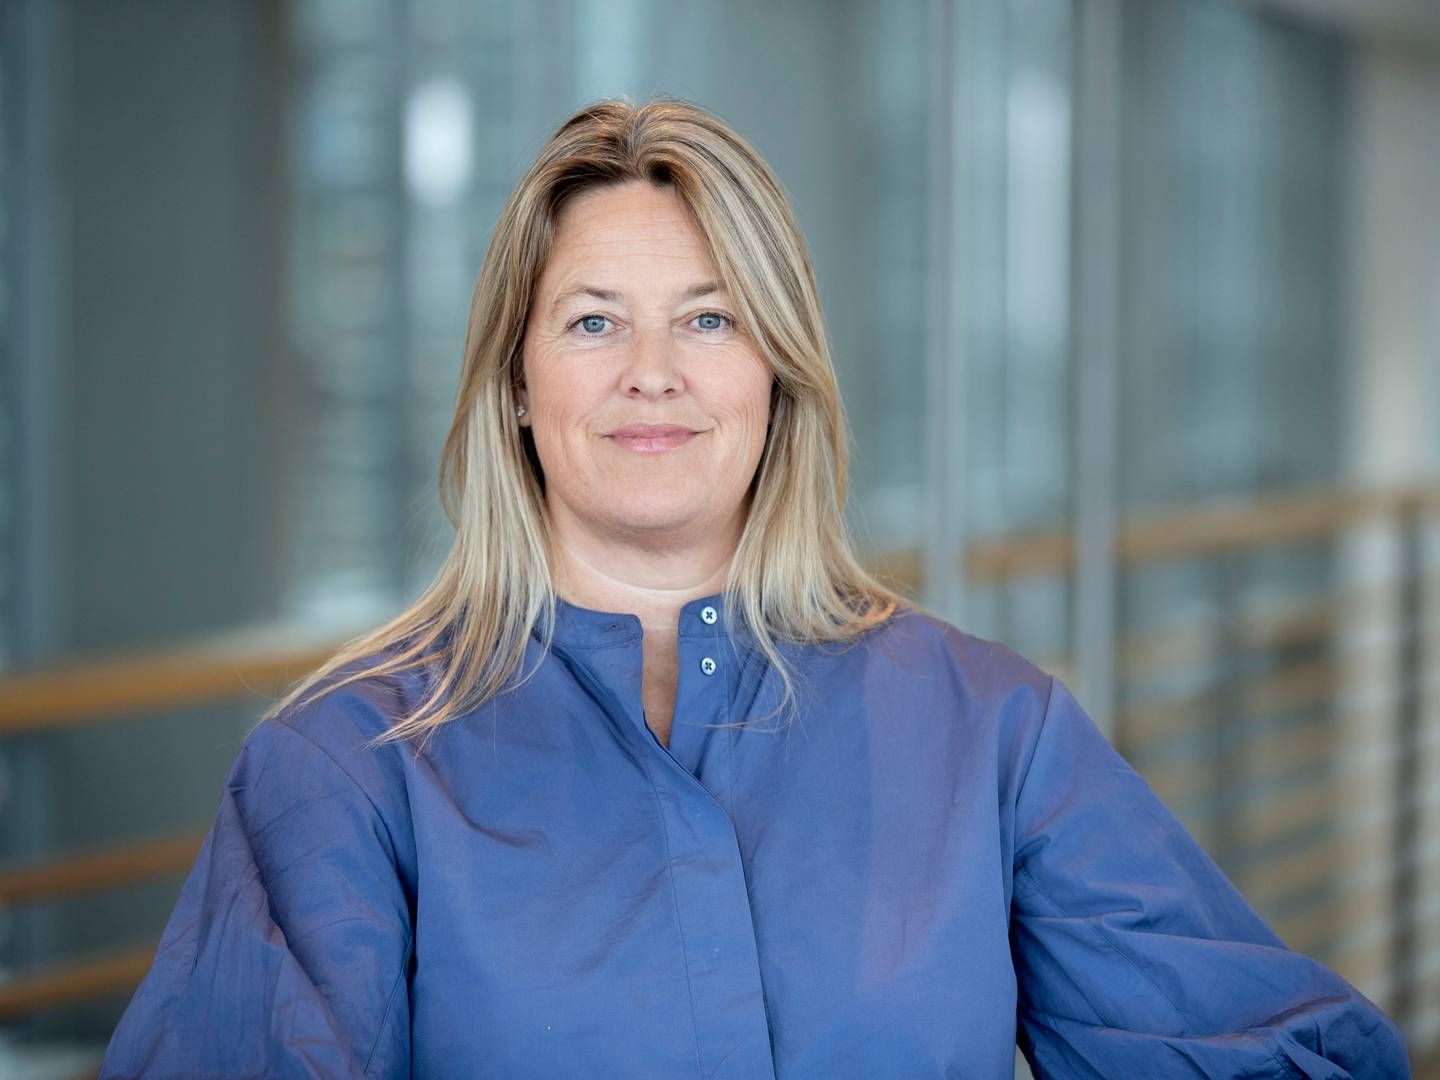 Christina Bruun Geertsen satte sig ved årsskiftet til rette som ledende partner i Kromann Reumert. | Foto: Pr